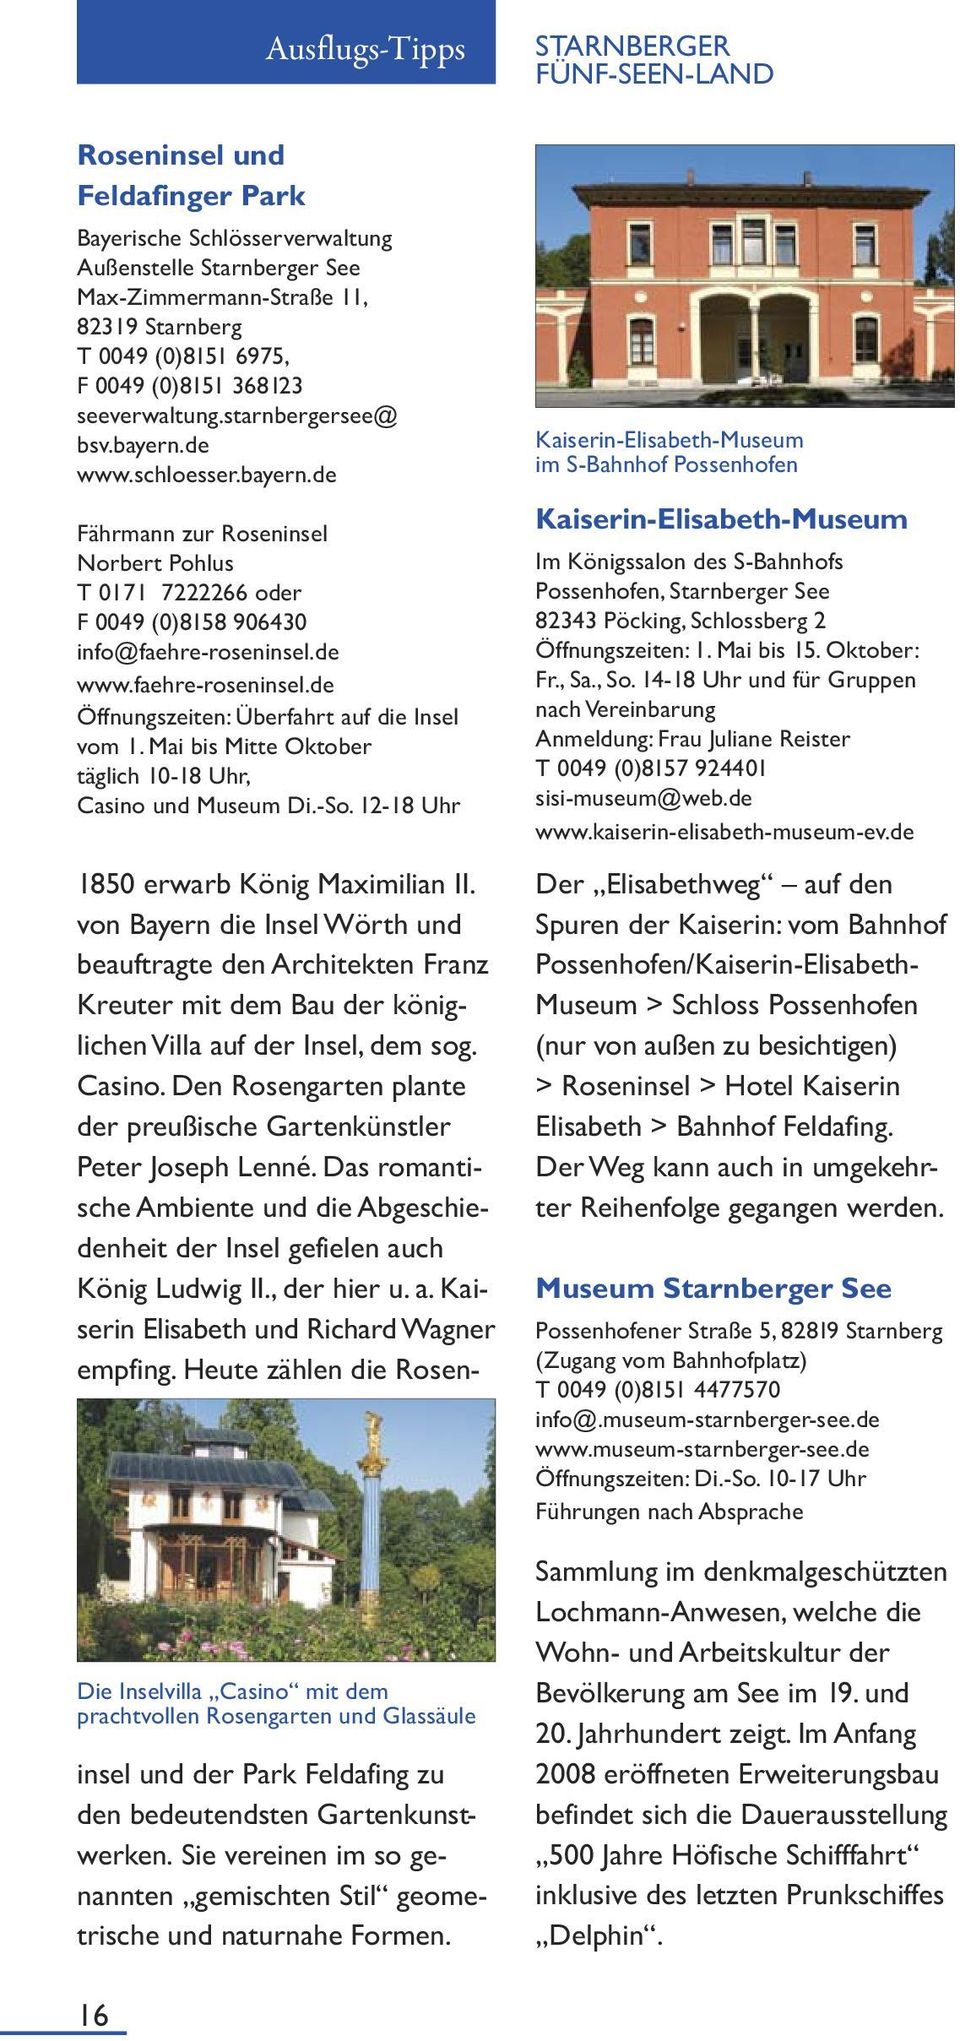 de www.faehre-roseninsel.de Öffnungszeiten: Überfahrt auf die Insel vom 1. Mai bis Mitte Oktober täglich 10-18 Uhr, Casino und Museum Di.-So. 12-18 Uhr 1850 erwarb König Maximilian II.